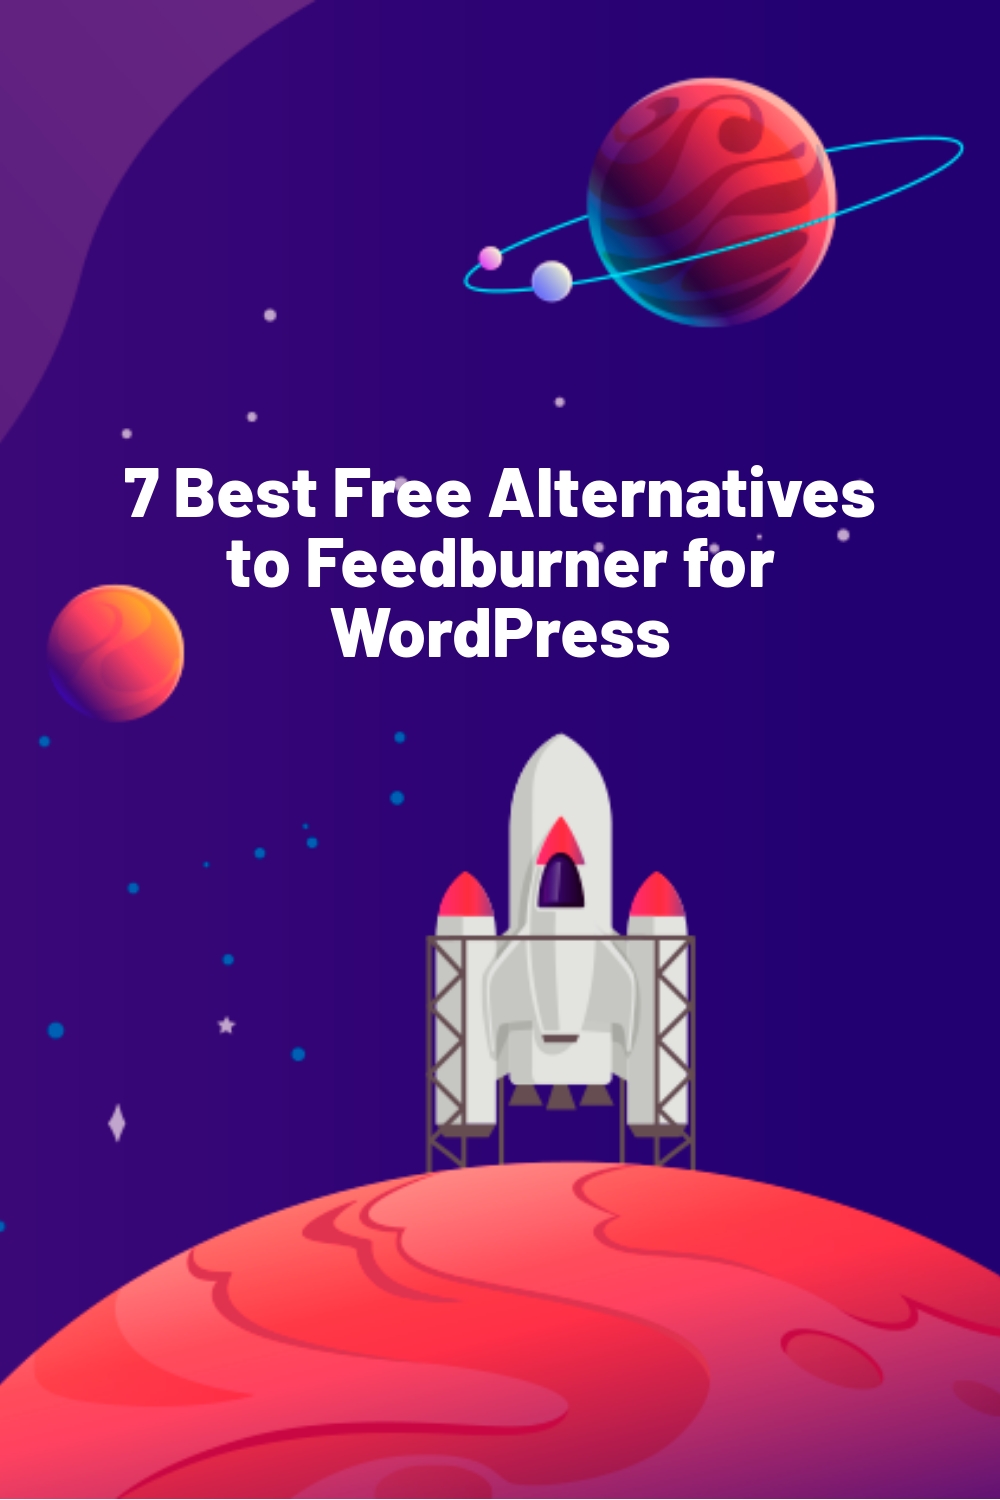 7 Best Free Alternatives to Feedburner for WordPress